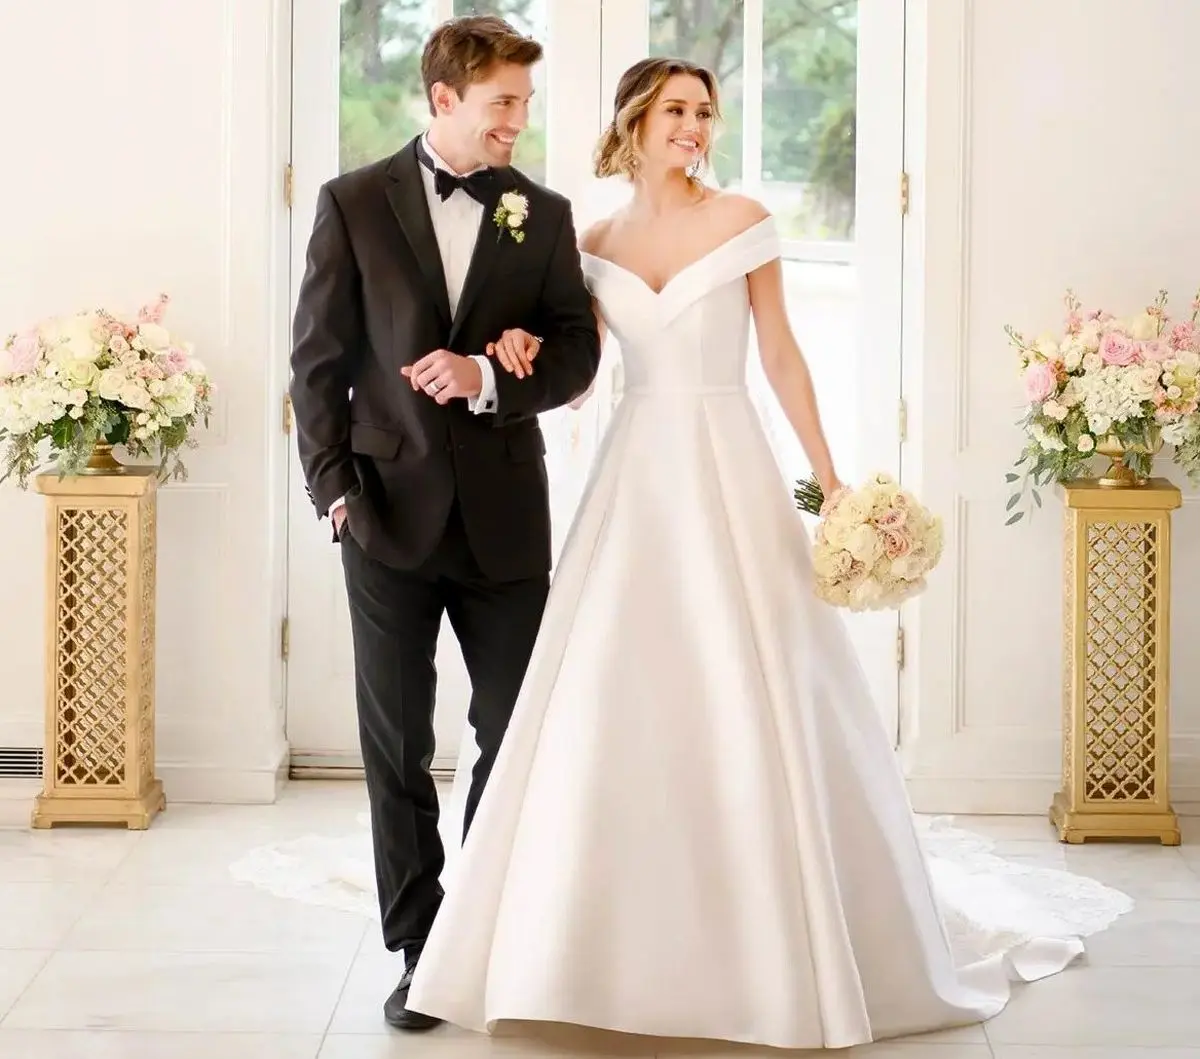 لباس عروس مناسب برای هر اندام: راهنمای کامل برای انتخاب بهترین لباس عروس برای شما!